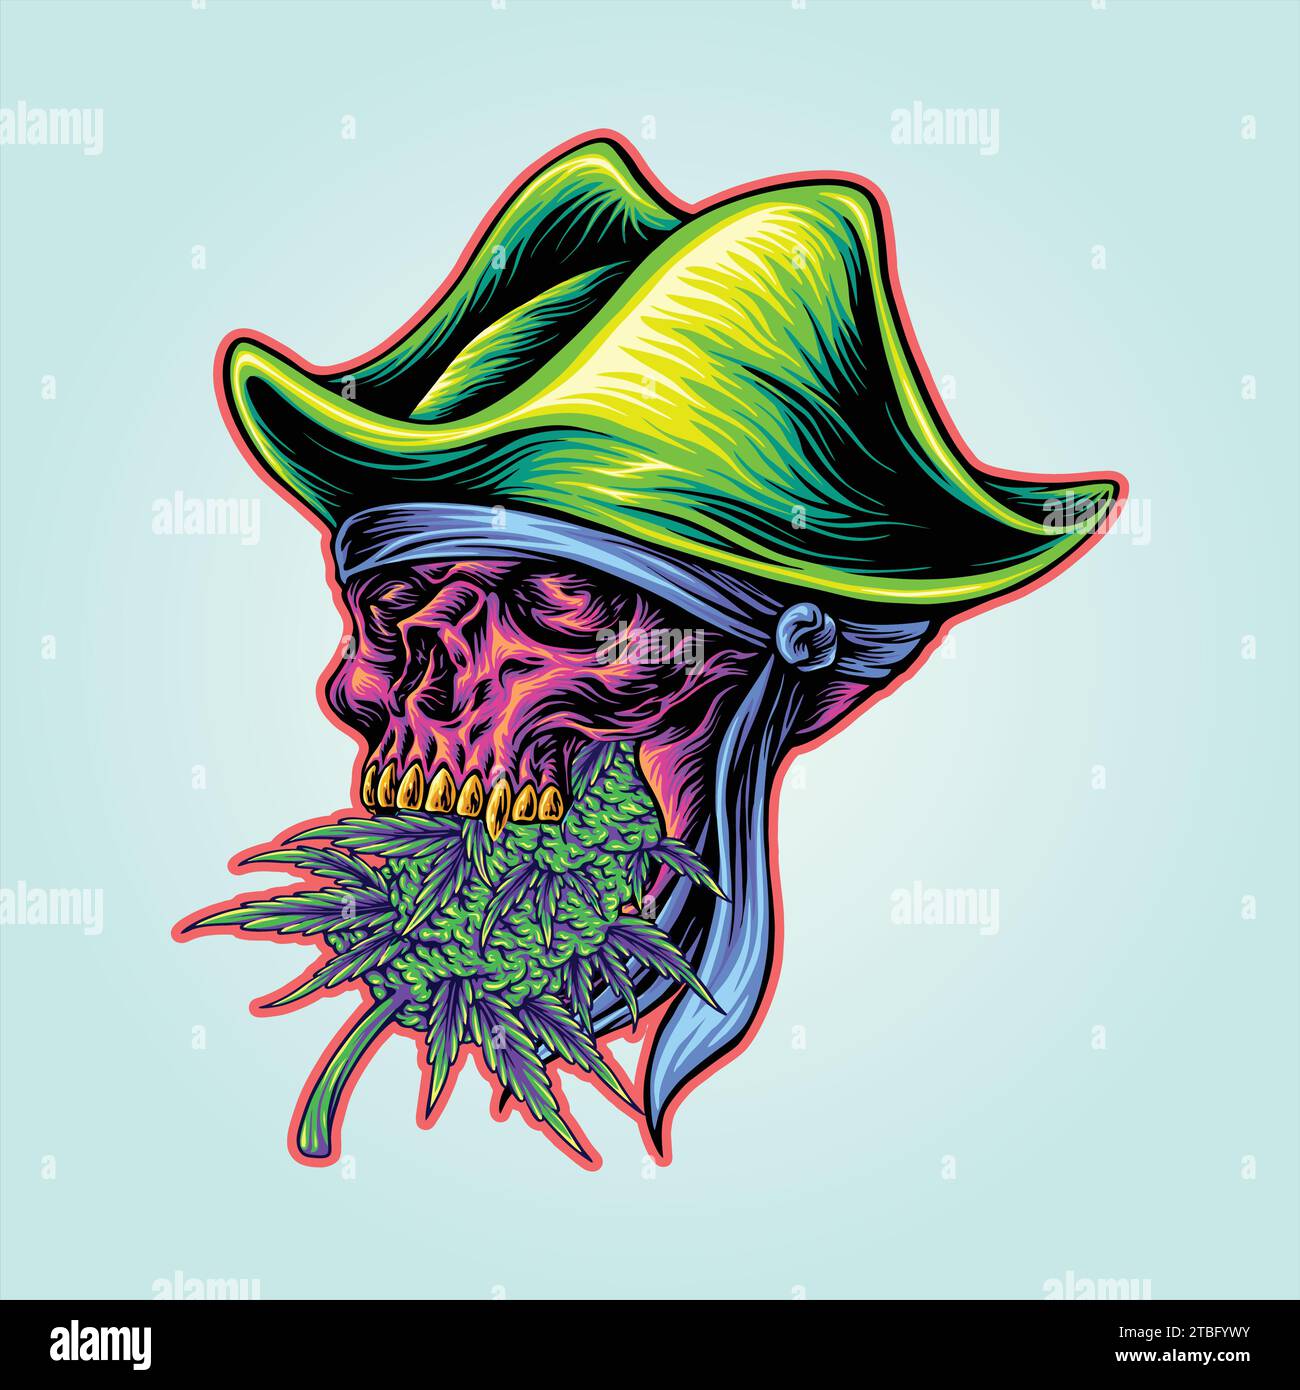 Piraten skurrile Cannabis Blatt Schädel erfreuen Vektor-Illustrationen für Ihre Arbeit Logo, Merchandise T-Shirt, Aufkleber und Label Designs, Poster, Gruß Stock Vektor